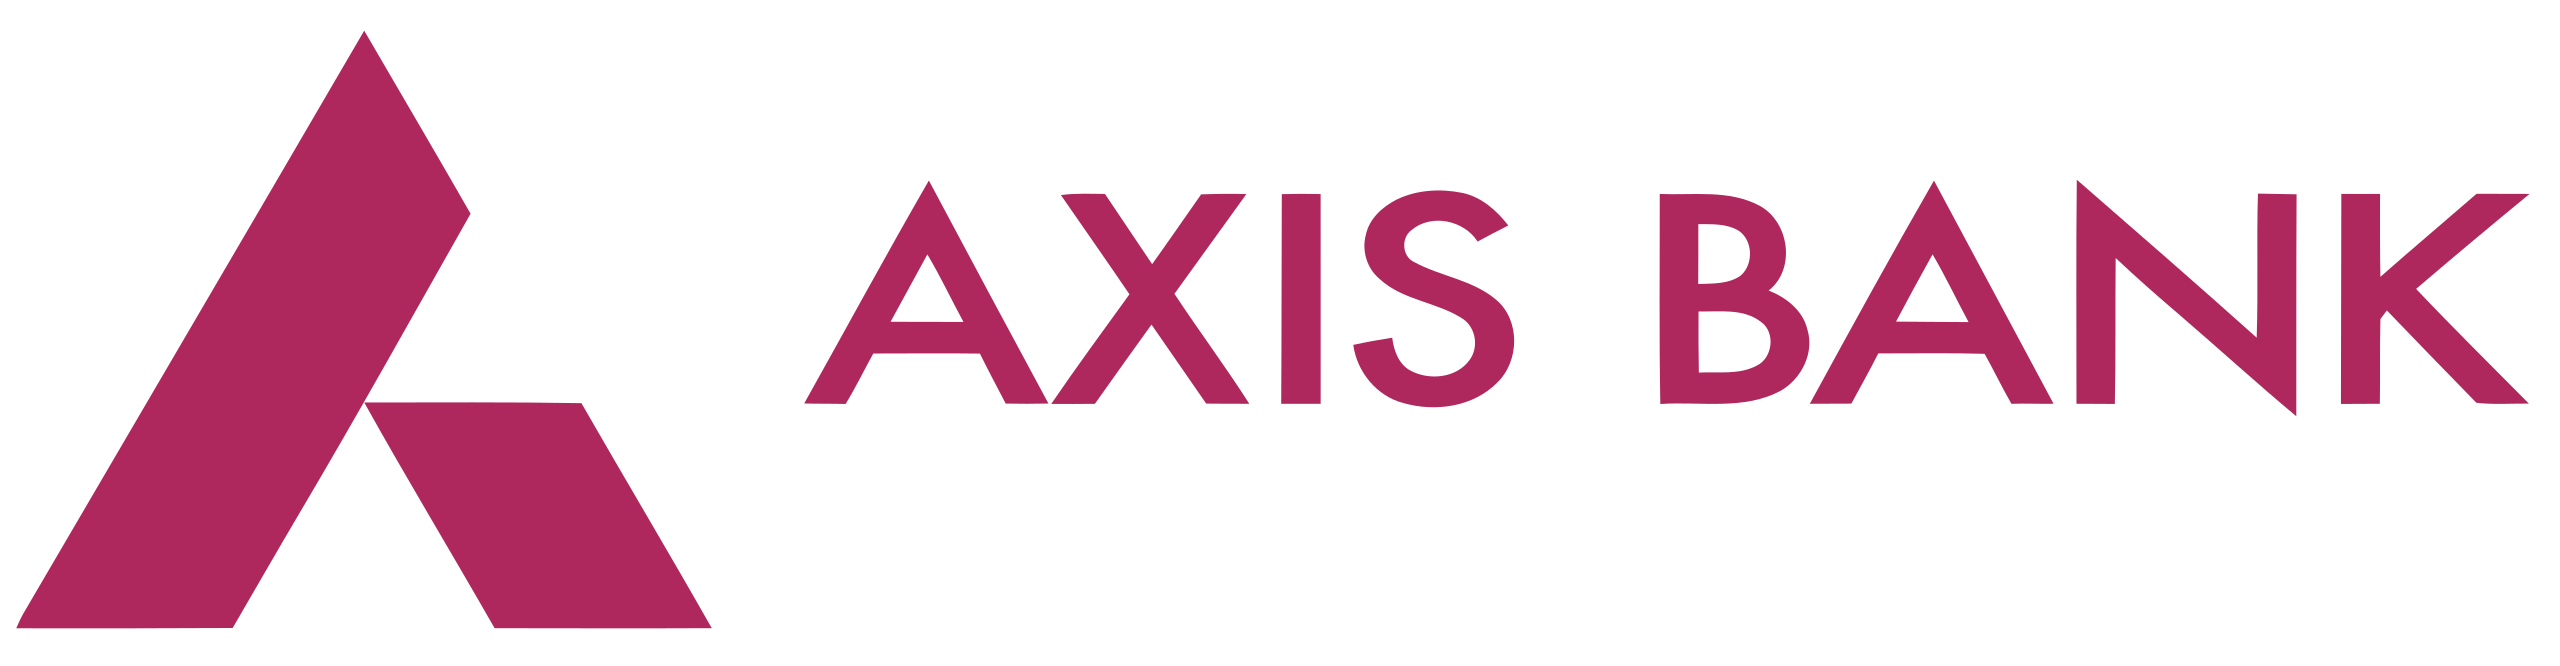 AxisBanj company logo